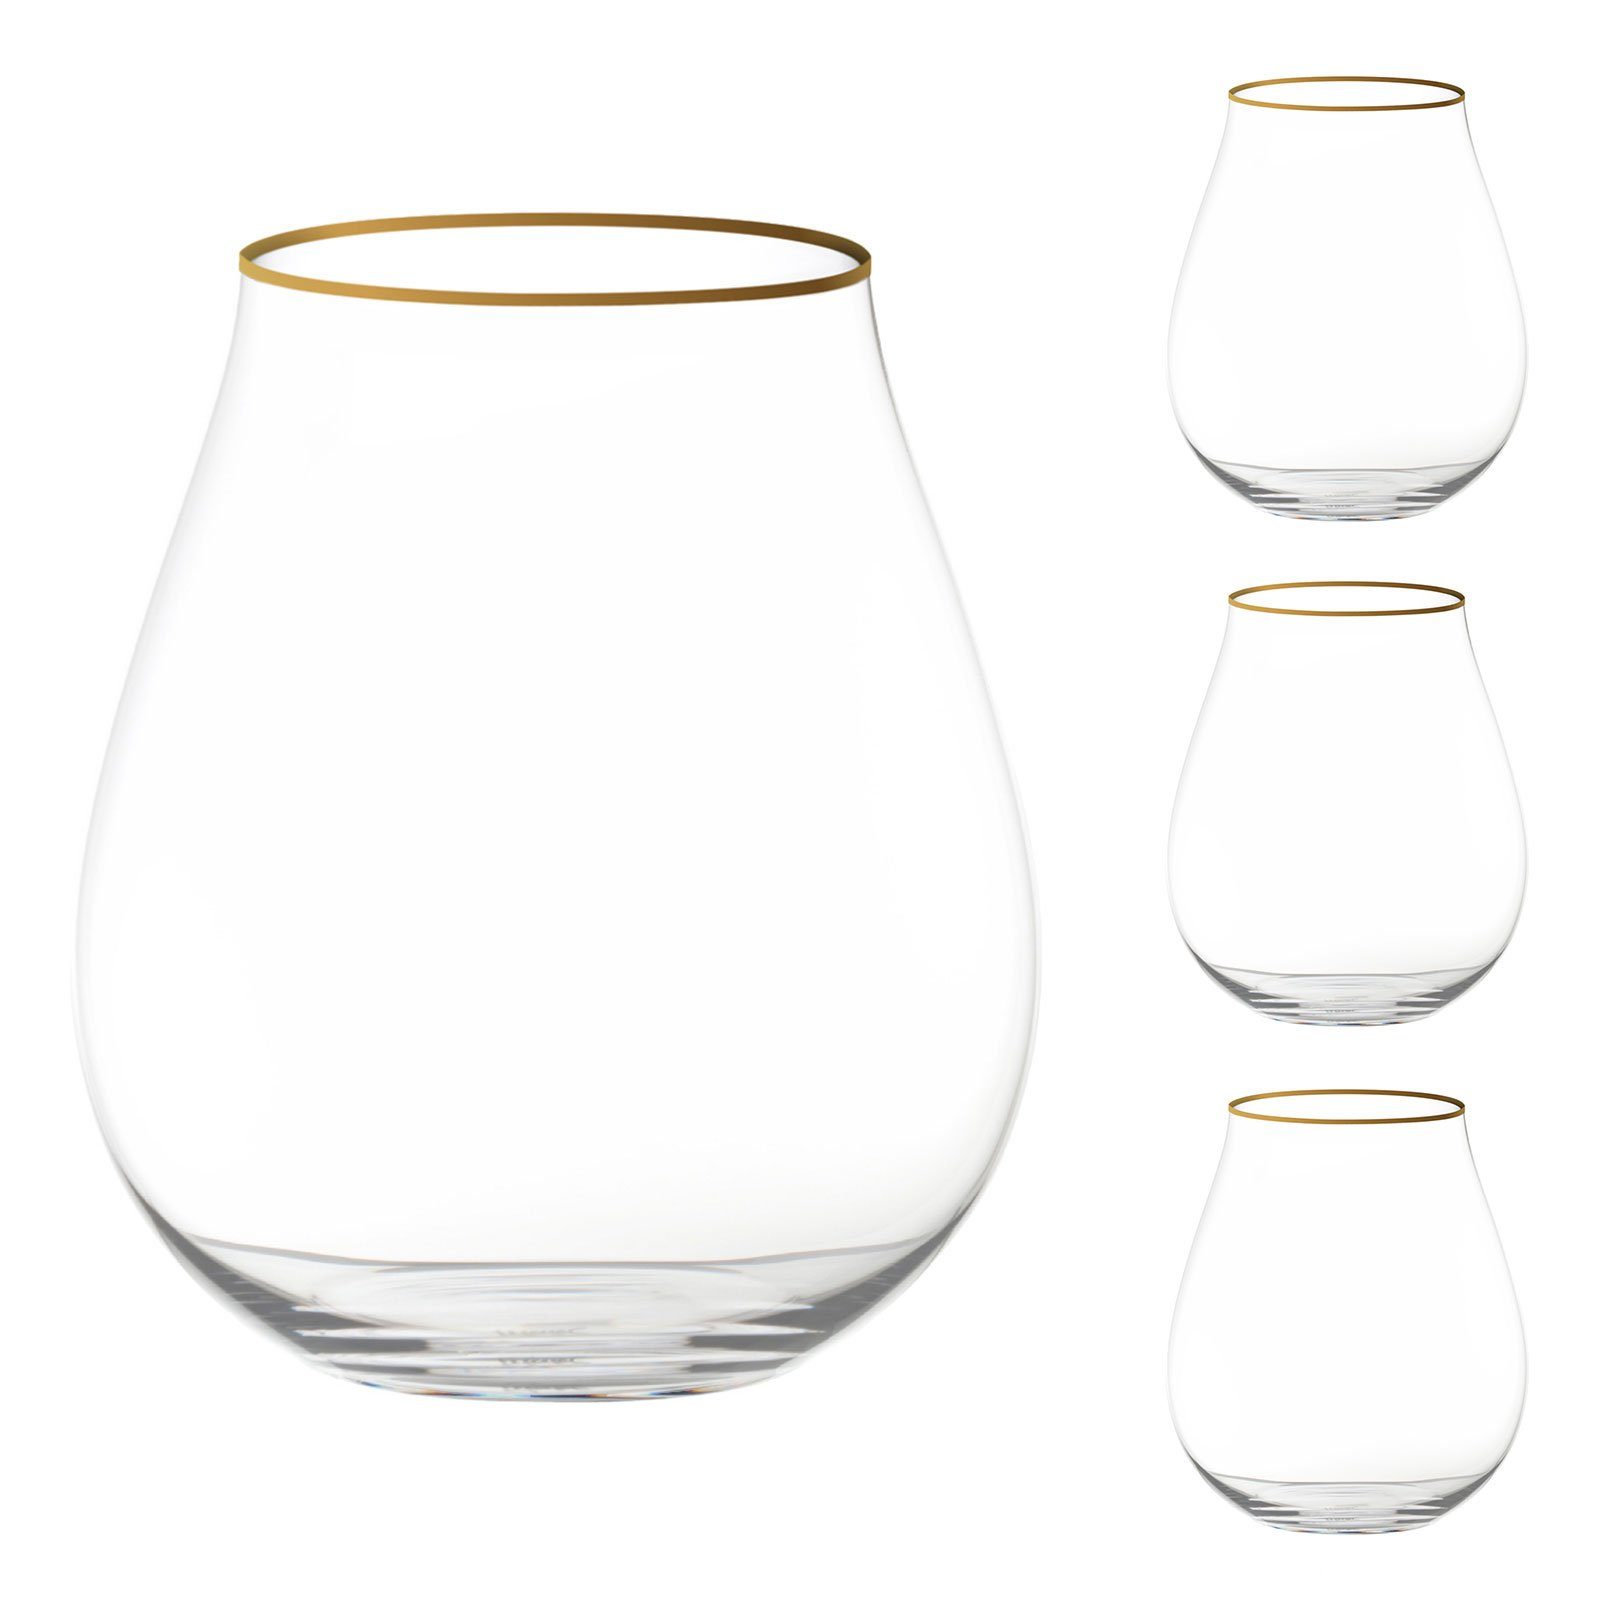 RIEDEL Glas Glas Gin Set Limitierte Edition mit Goldrand, Kristallglas